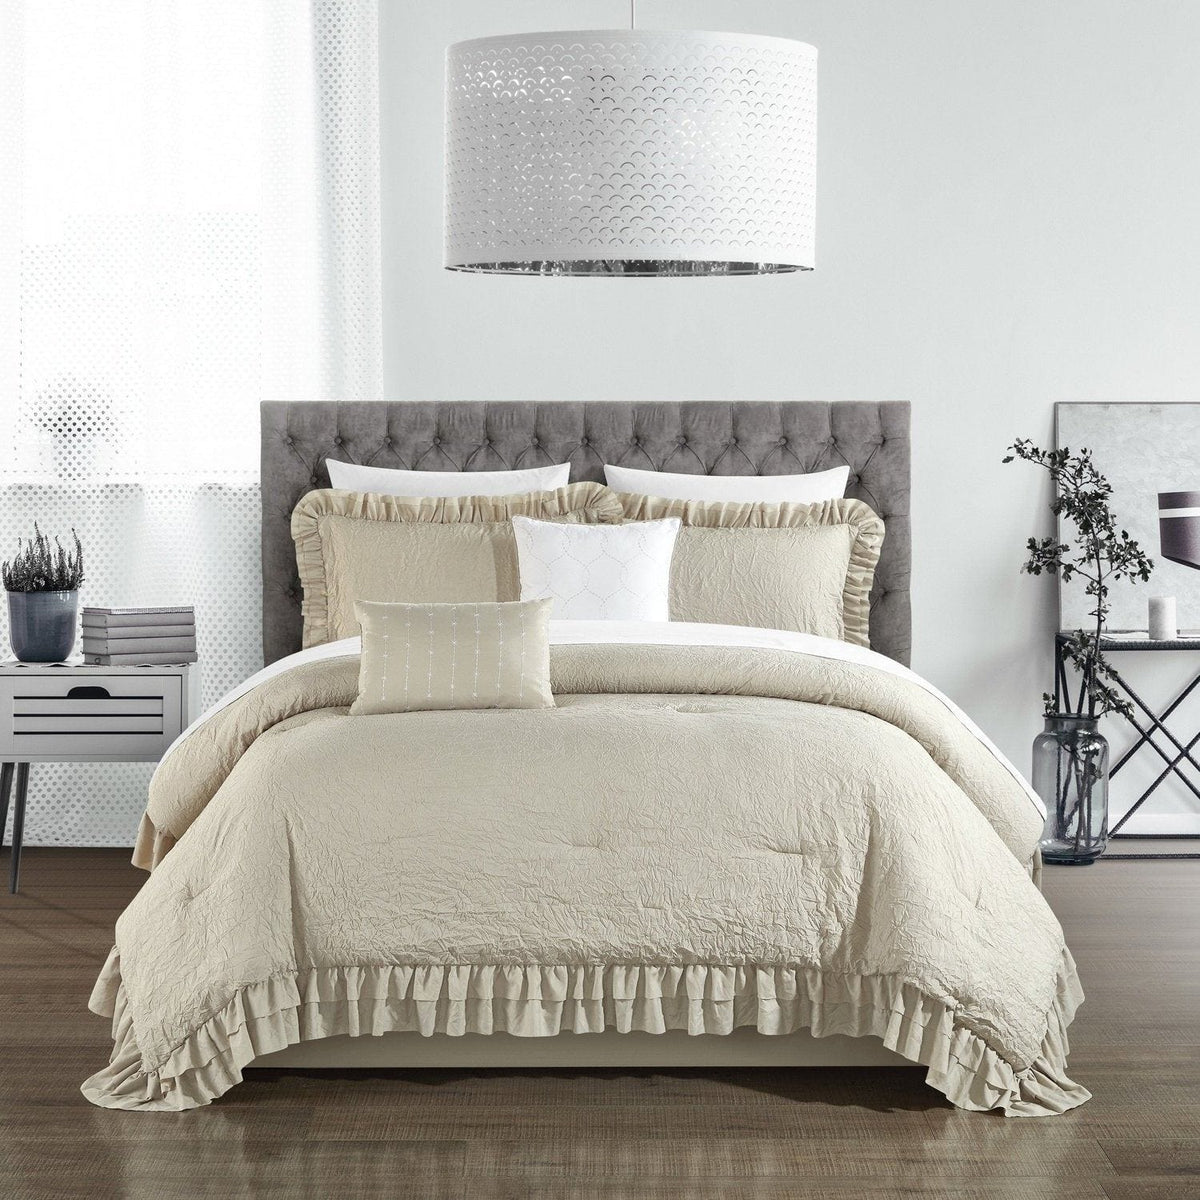 Chic Home 5 Piece Kensley Comforter Set Washed Crinkle Ruffled Flange Border Design Bedding - Beige Twin